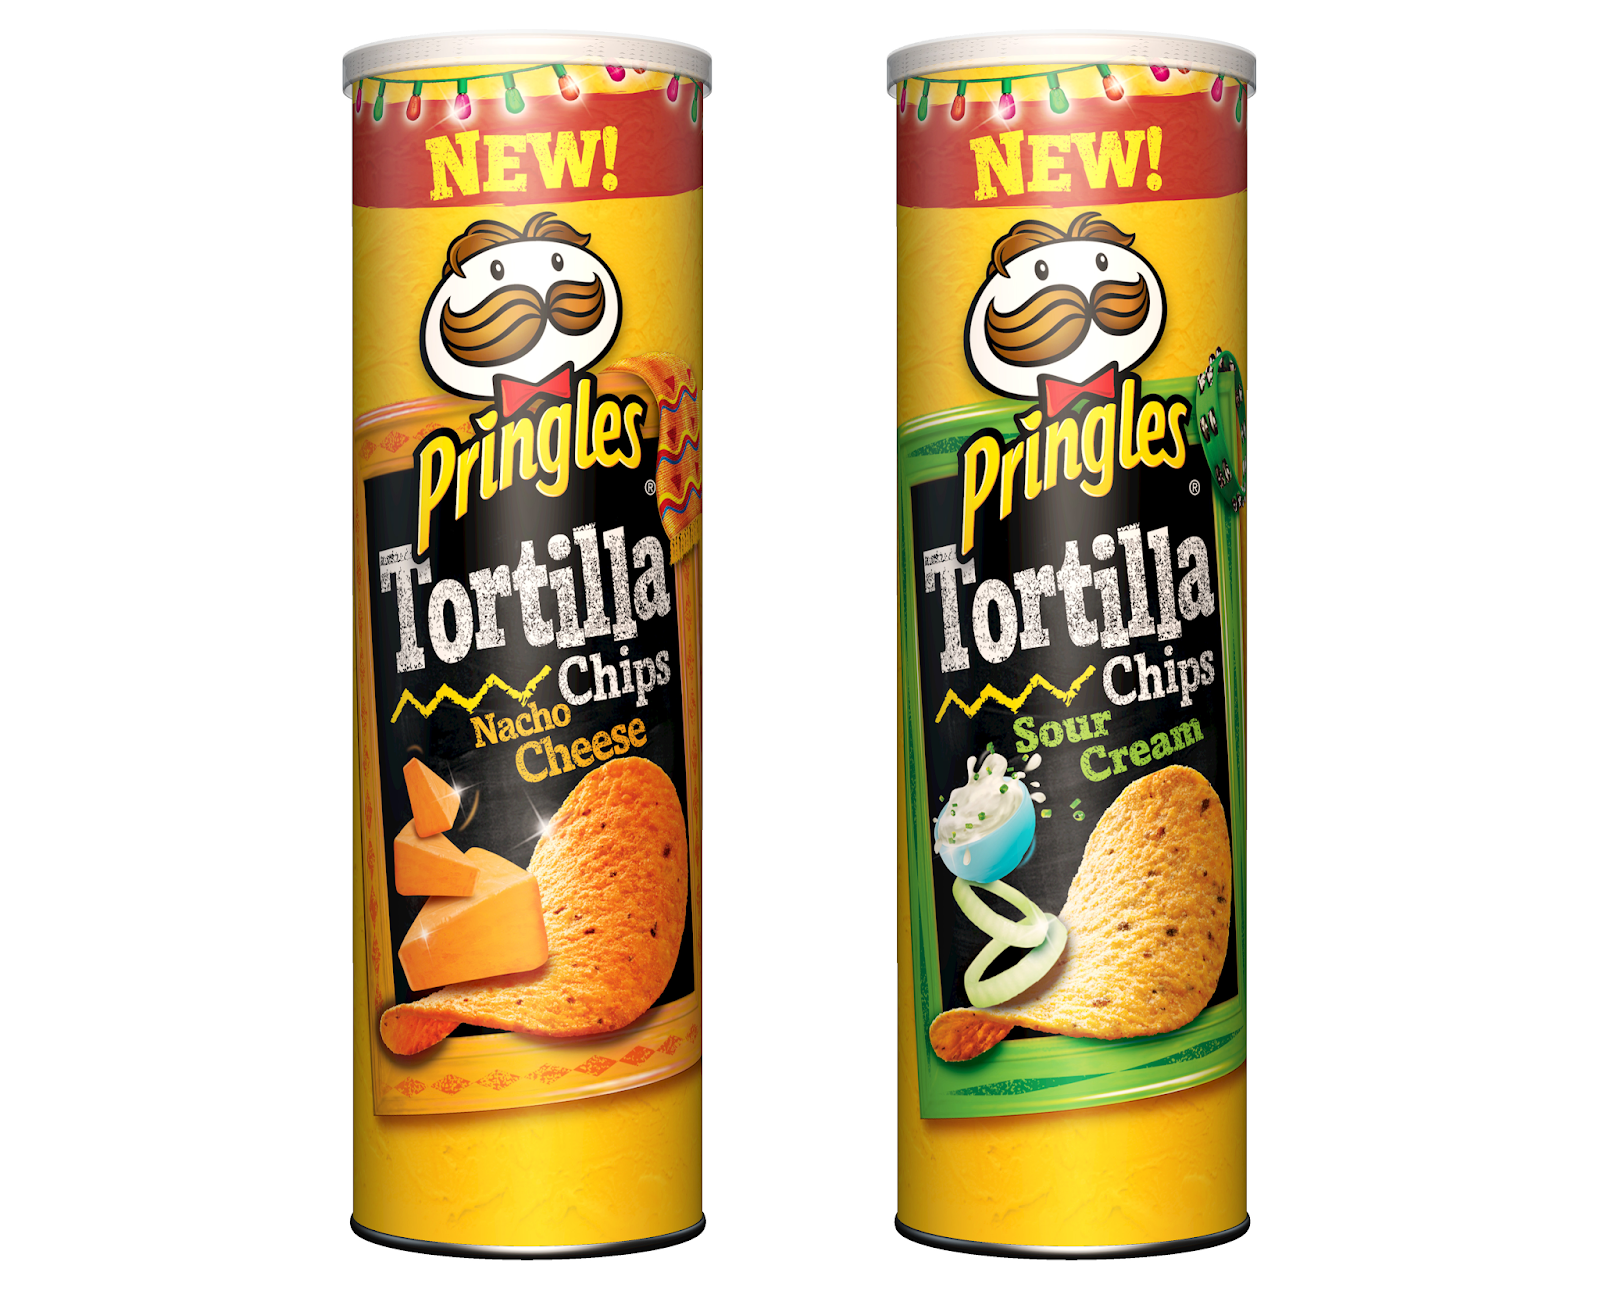 Новая линейка кукурузных чипсов Pringles «Tortilla» — BRANDS AROUND